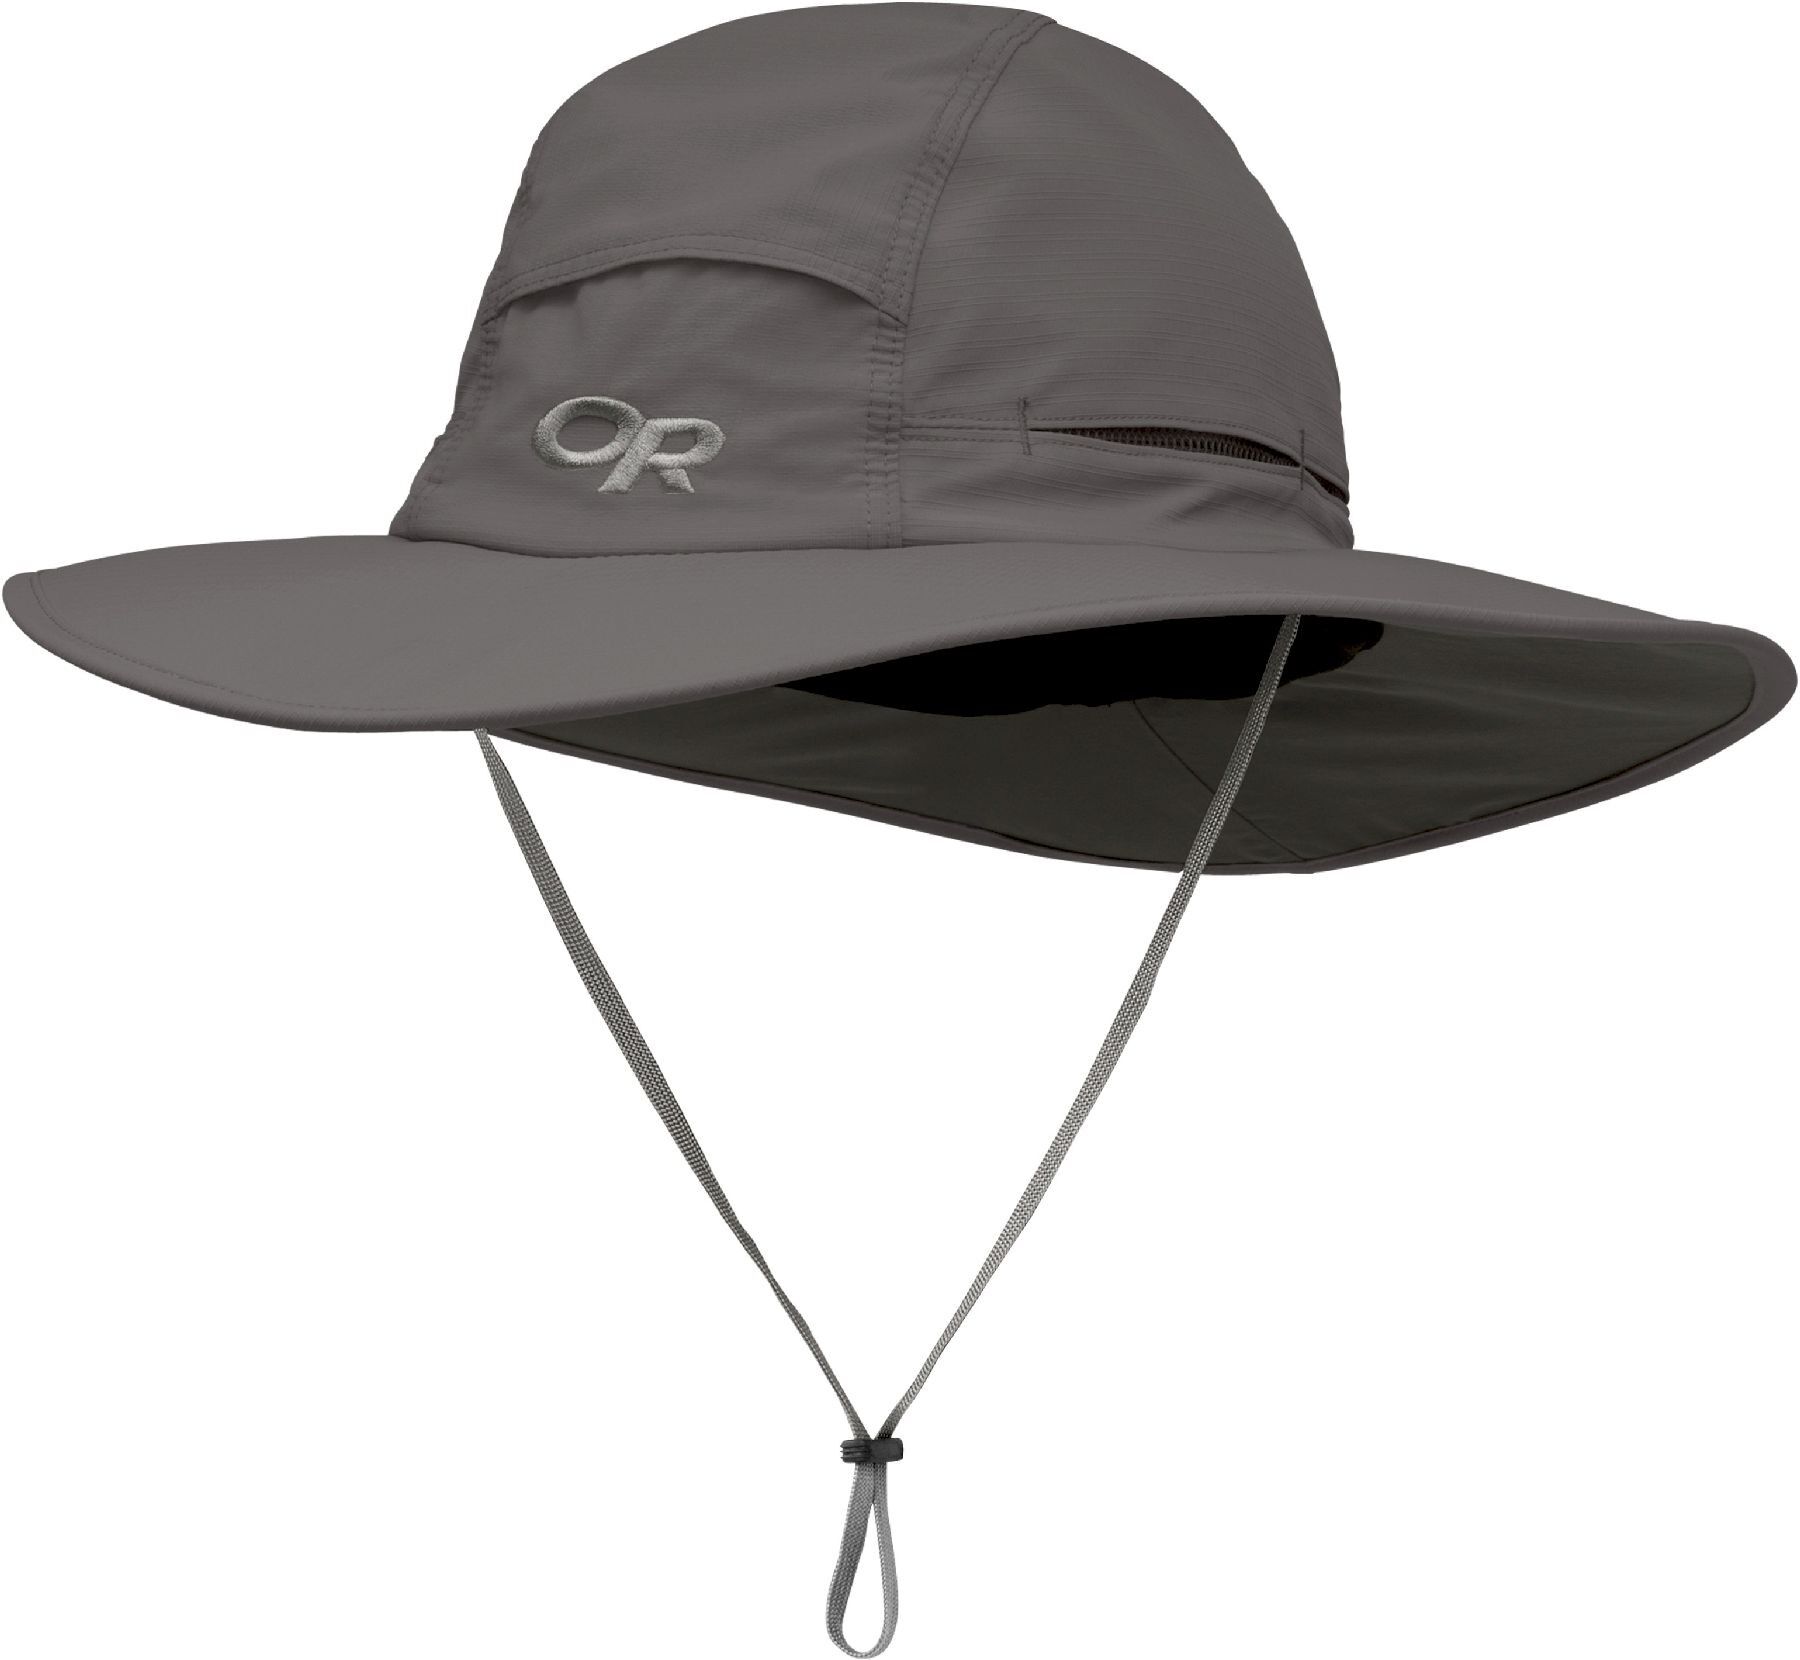 Outdoor Research Sombriolet Sun Hat - Sombrero